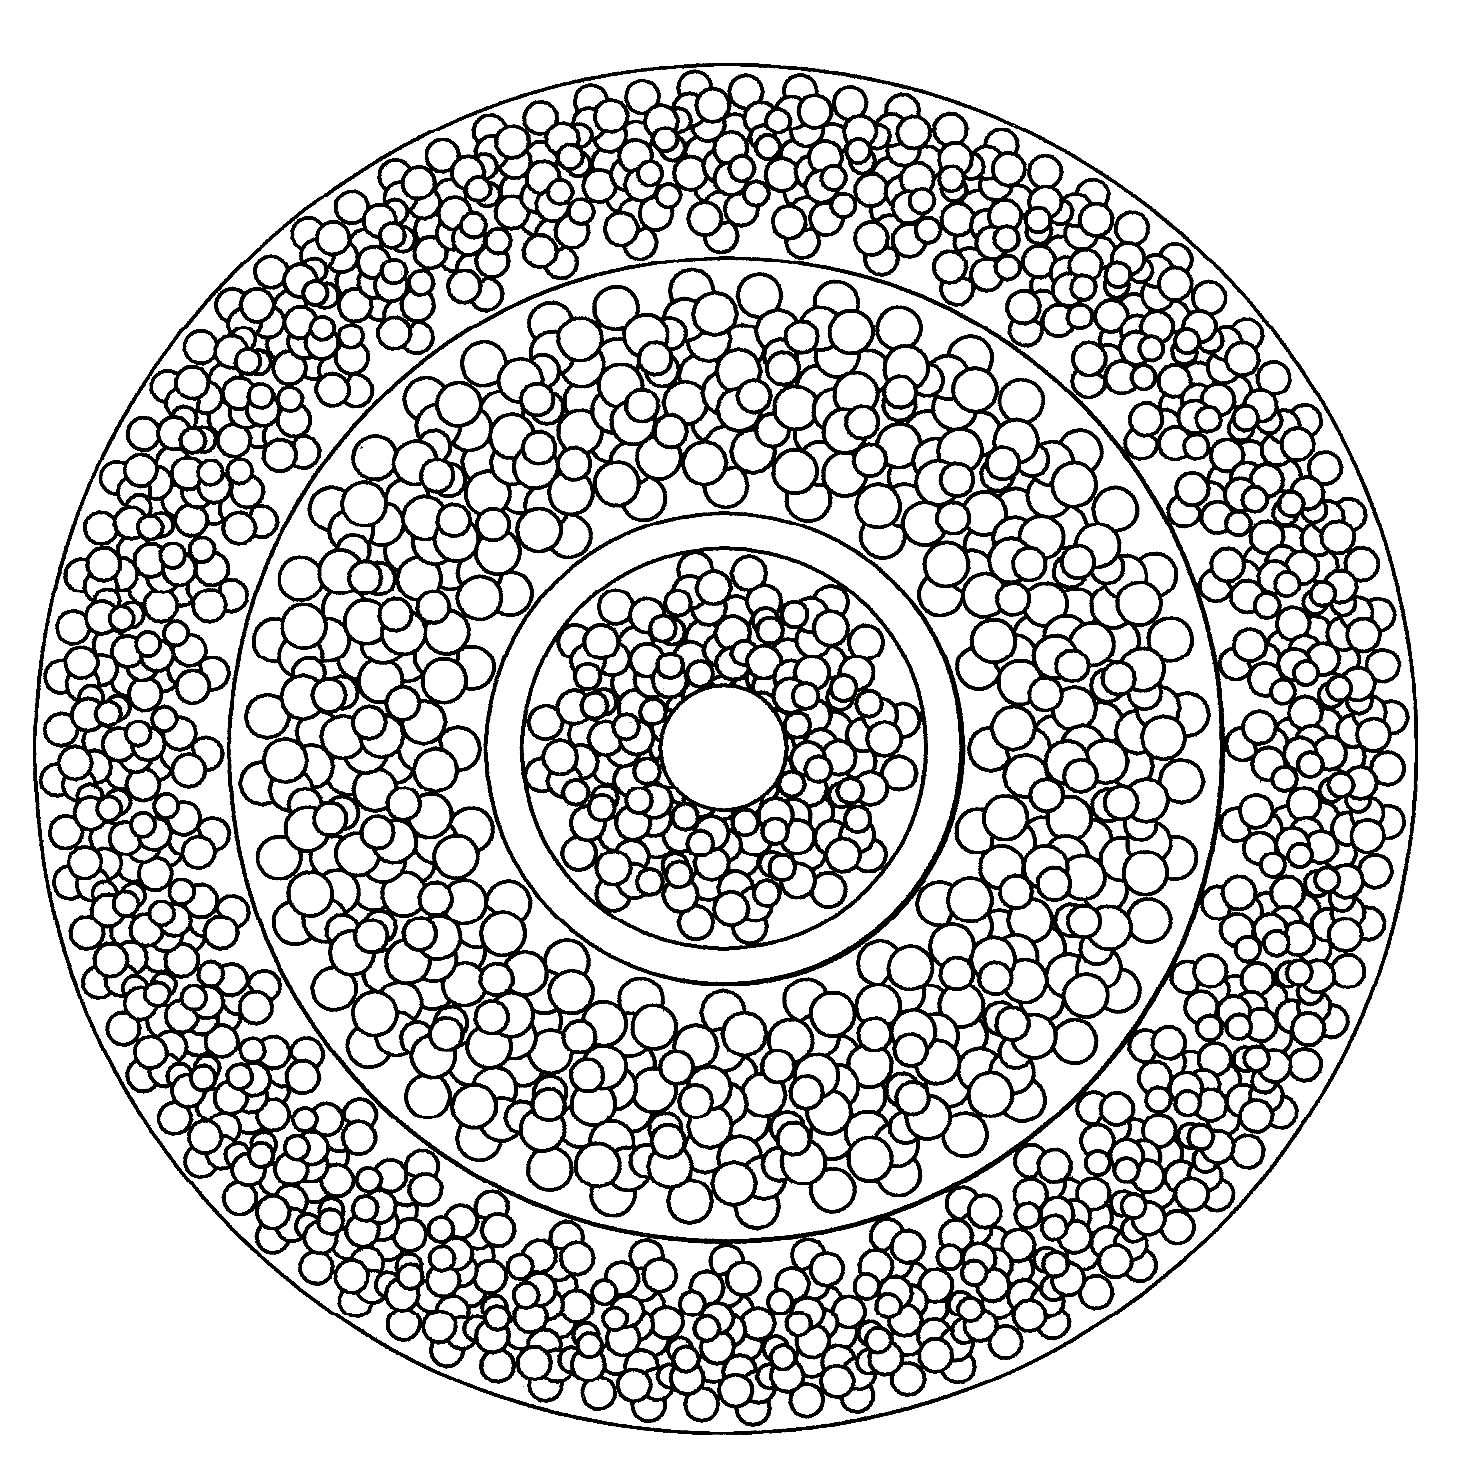 Uma mandala cheia de pequenos círculos